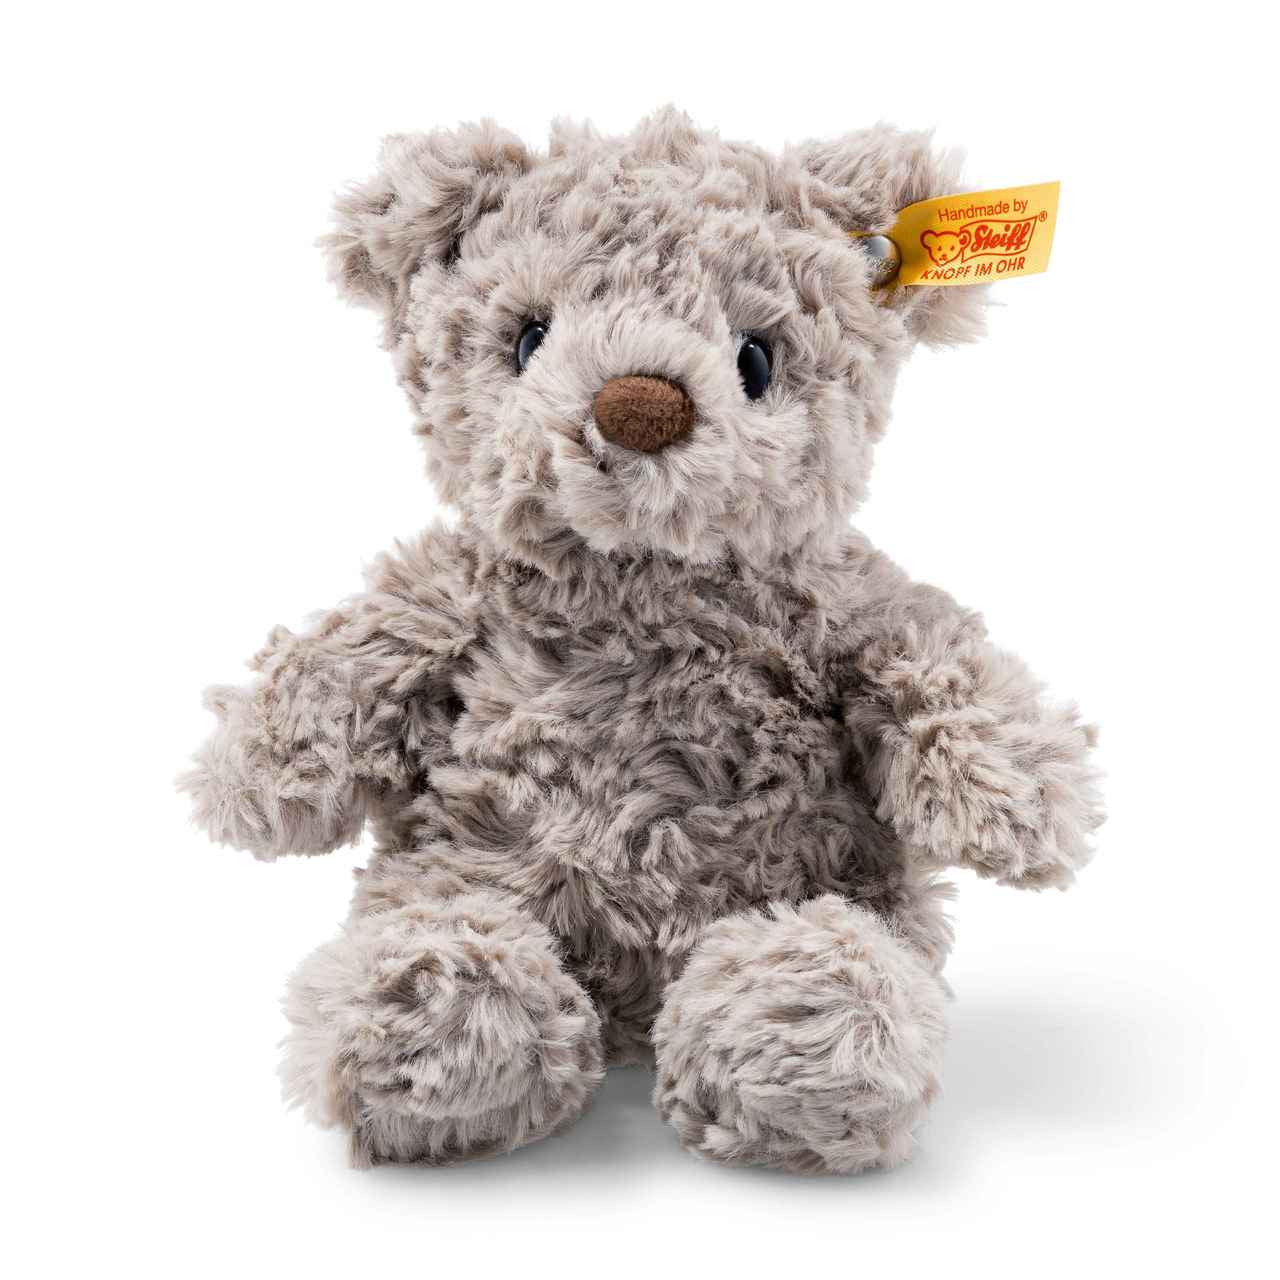 Steiff Honey Teddy Bear 11 Inch Soft Cuddly Friends Stuffed Animal